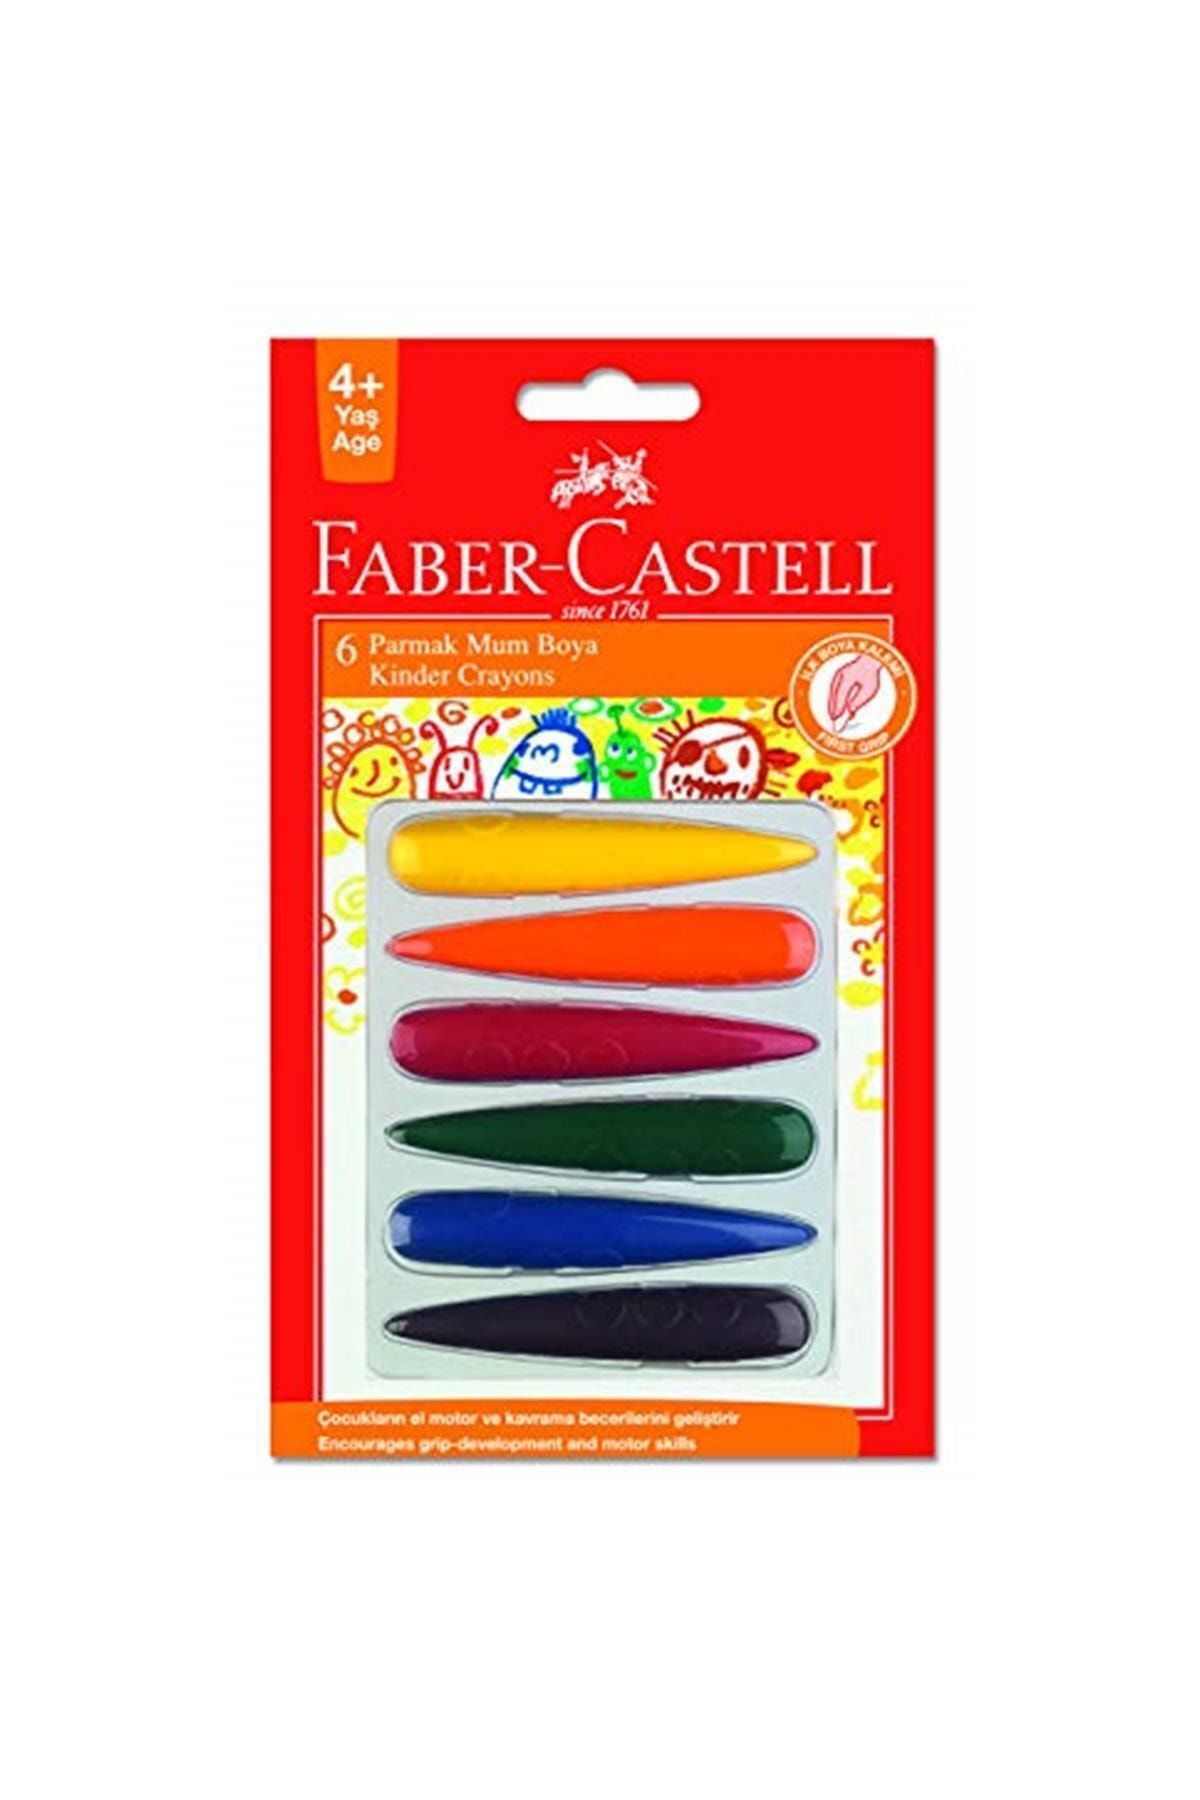 Faber Castell Marka: Faber - Castell Parmak Mum Boya